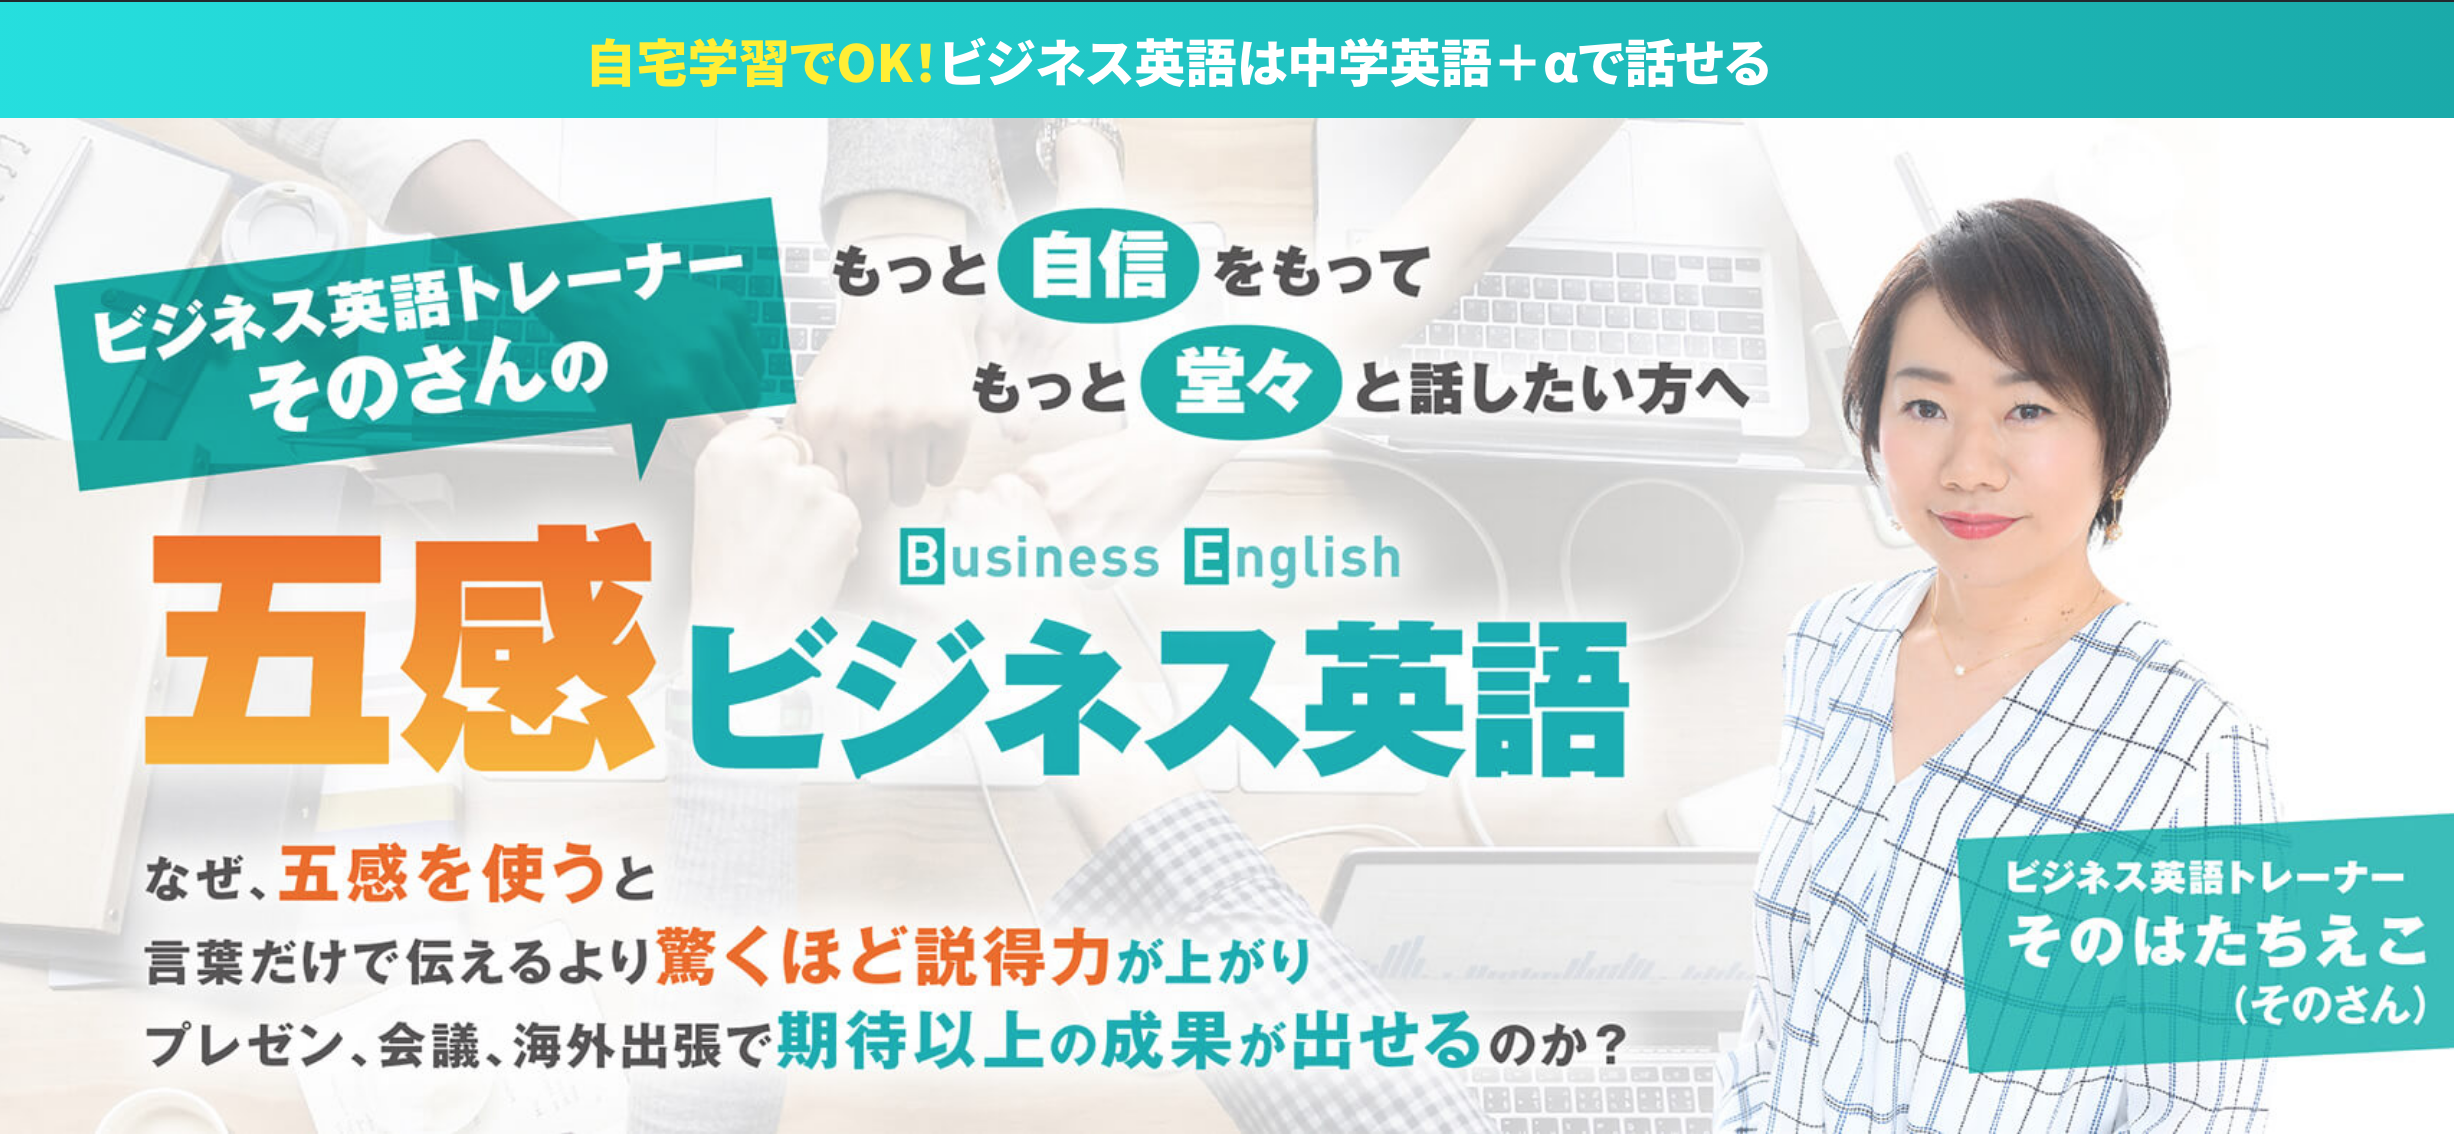 五感ビジネス英語